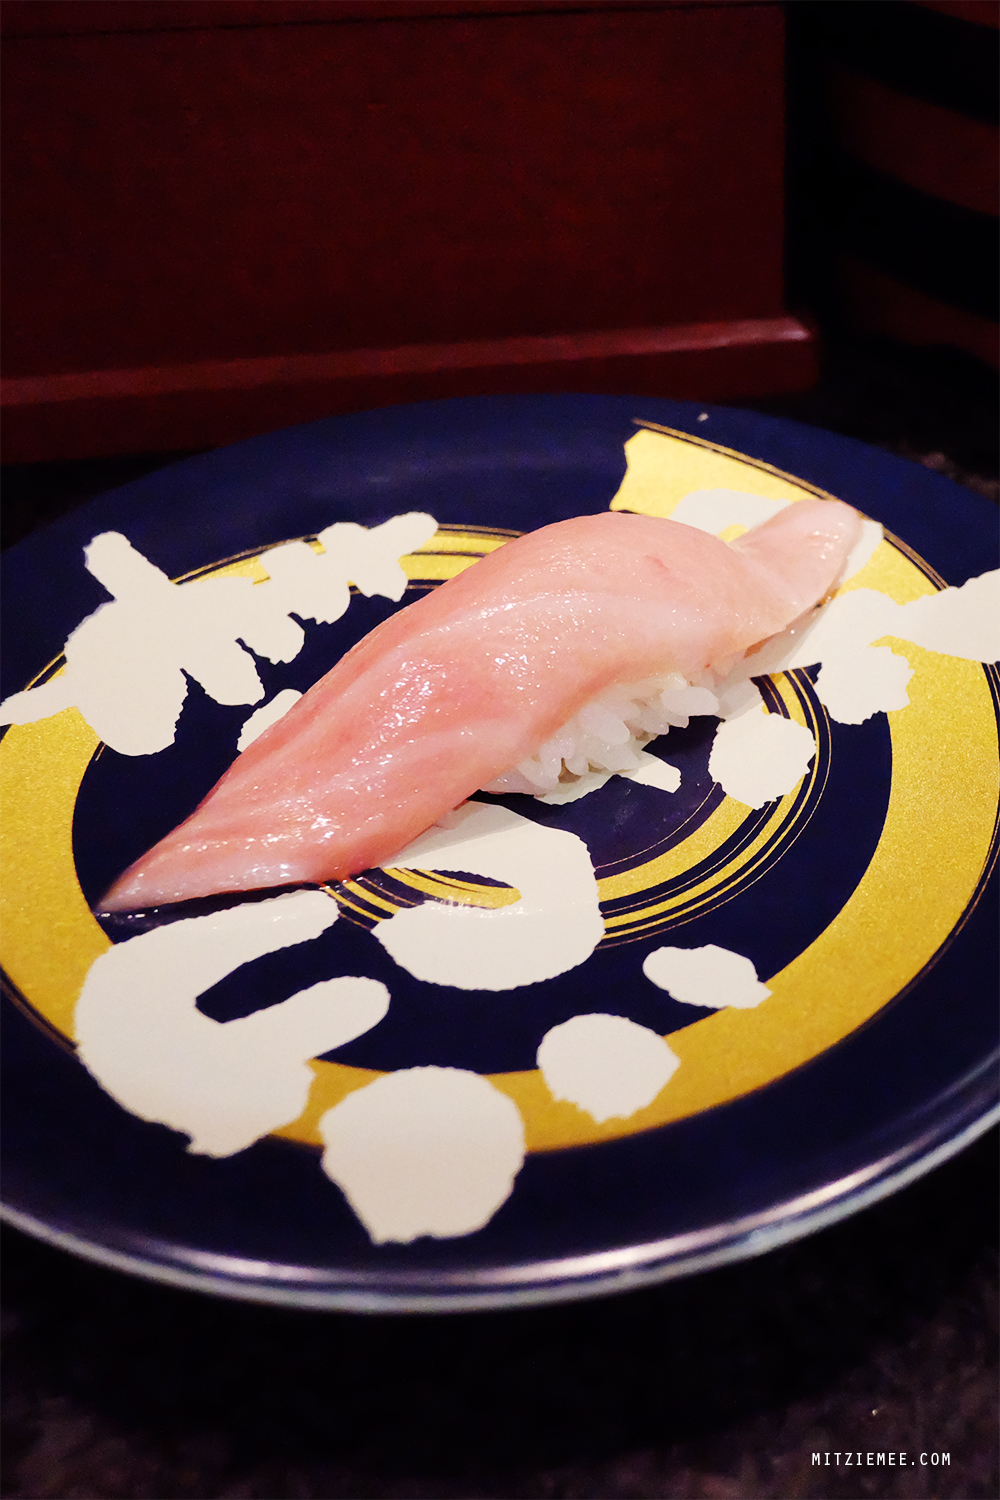 Numazuko, kaiten sushi in Tokyo